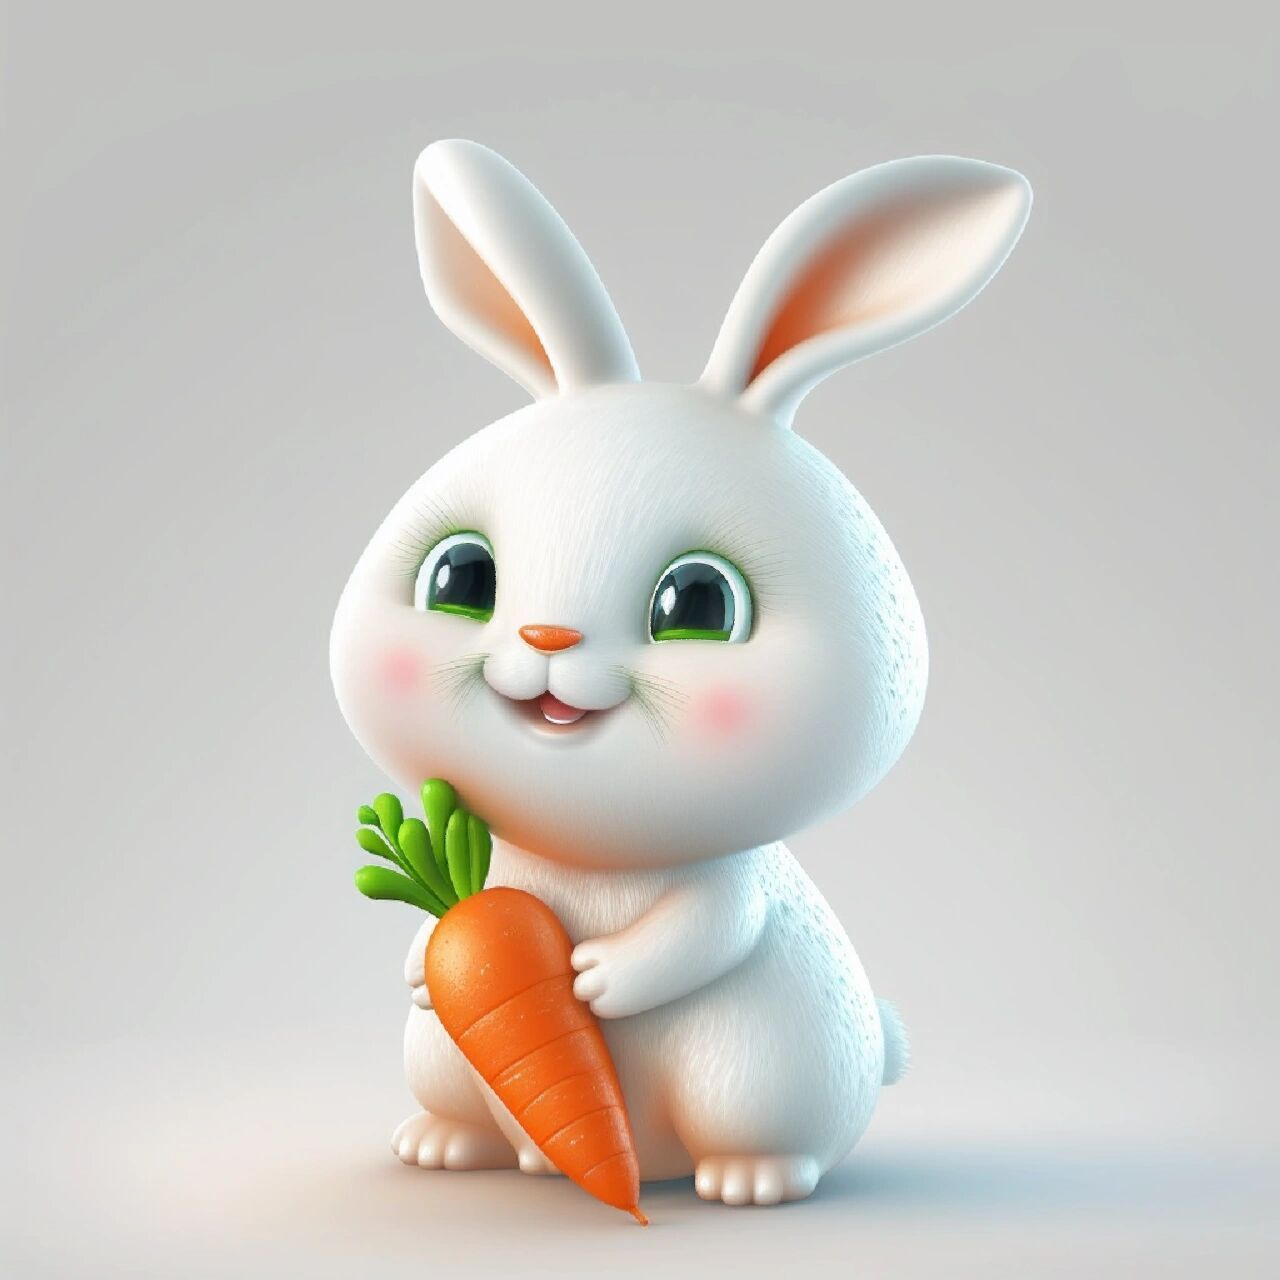 爱吃胡萝卜的小胖兔   